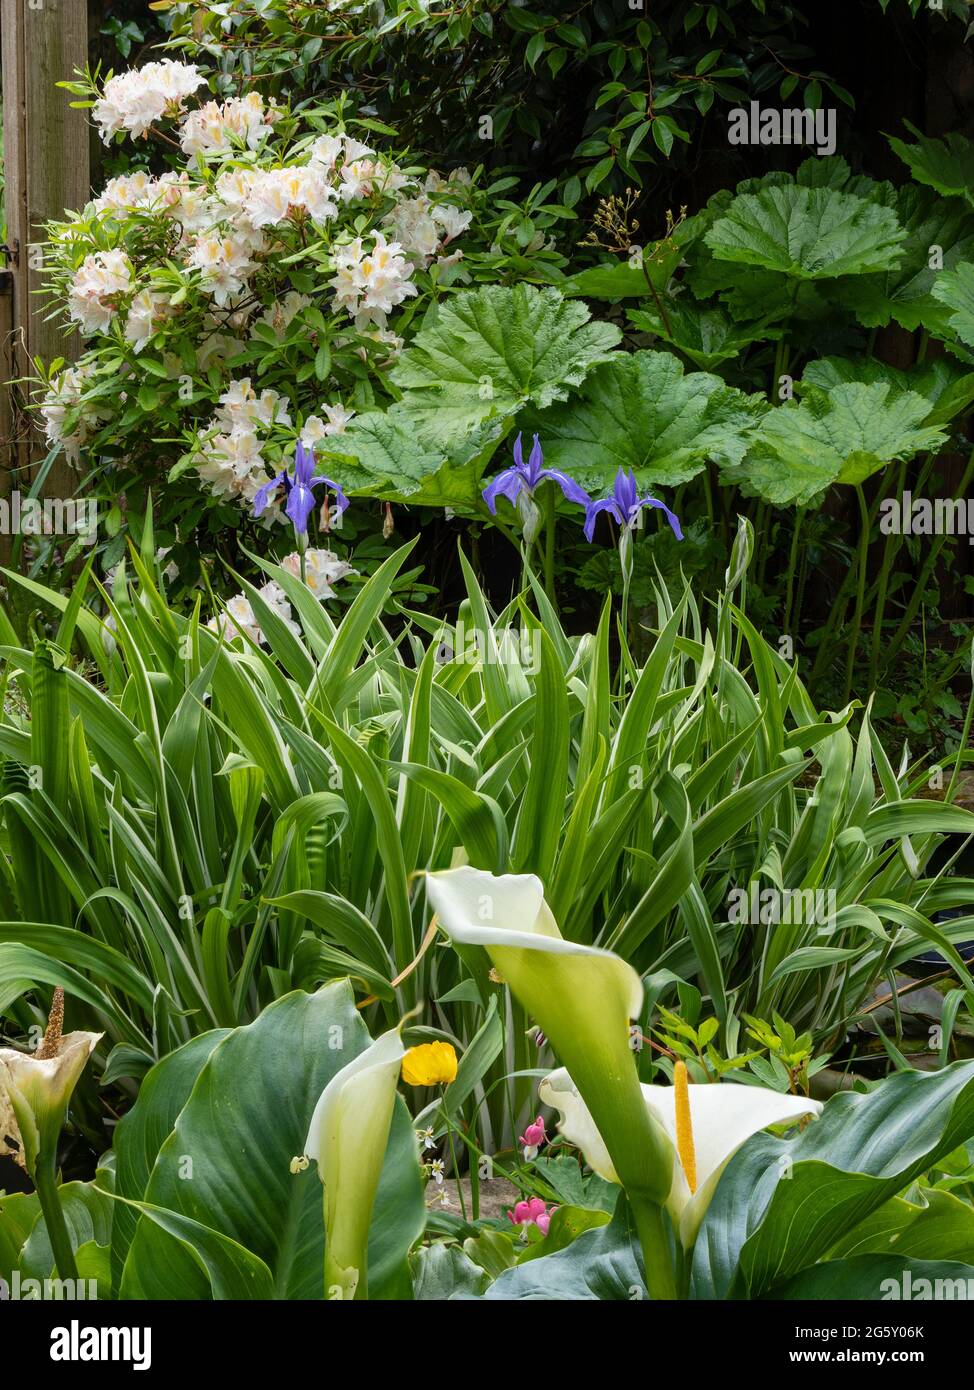 Spätes Frühjahr Interesse an einem Garten in Plymout, Devon, Großbritannien mit Darmera peltata, Rhododendron 'Exquisetum' Iris laevigata 'Variegata' und Zantedeschia aethi Stockfoto